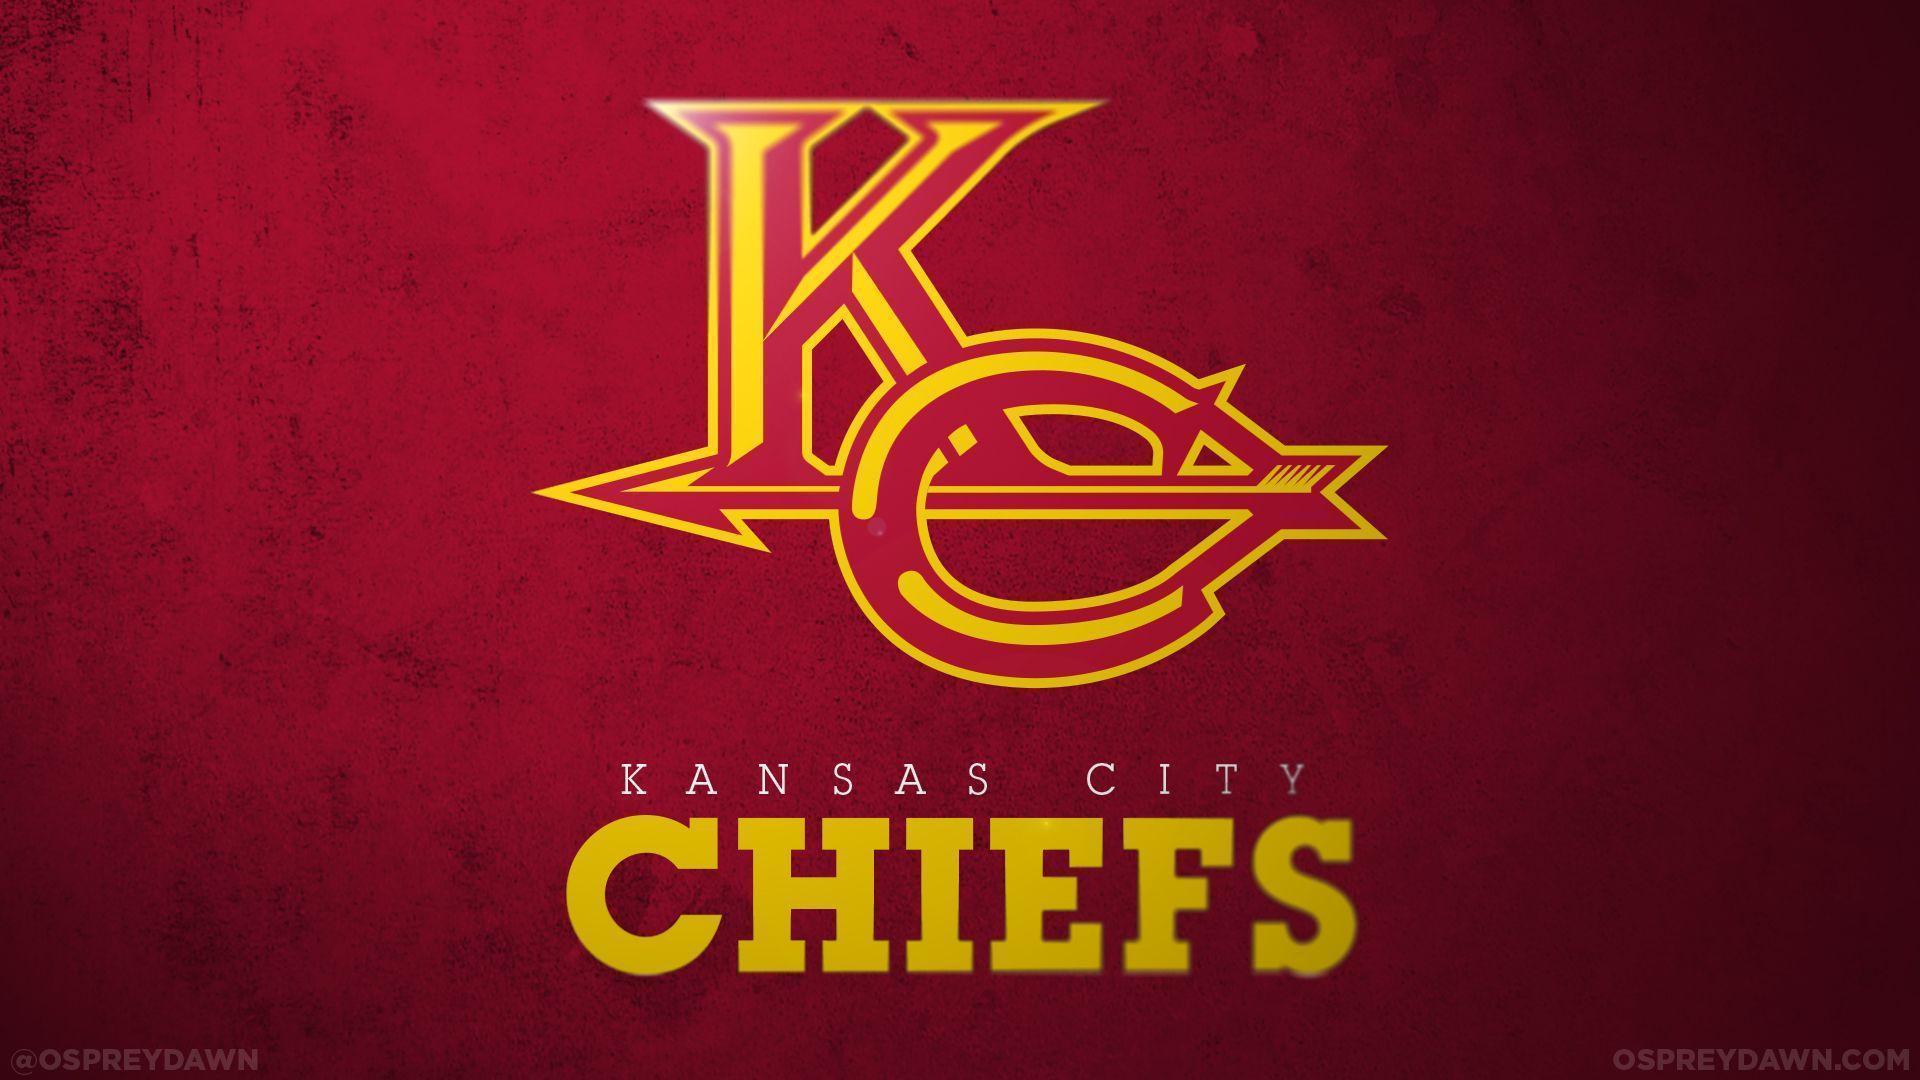 Kansas City Chiefs Football Team Logo Wallpapers HD / Desktop and